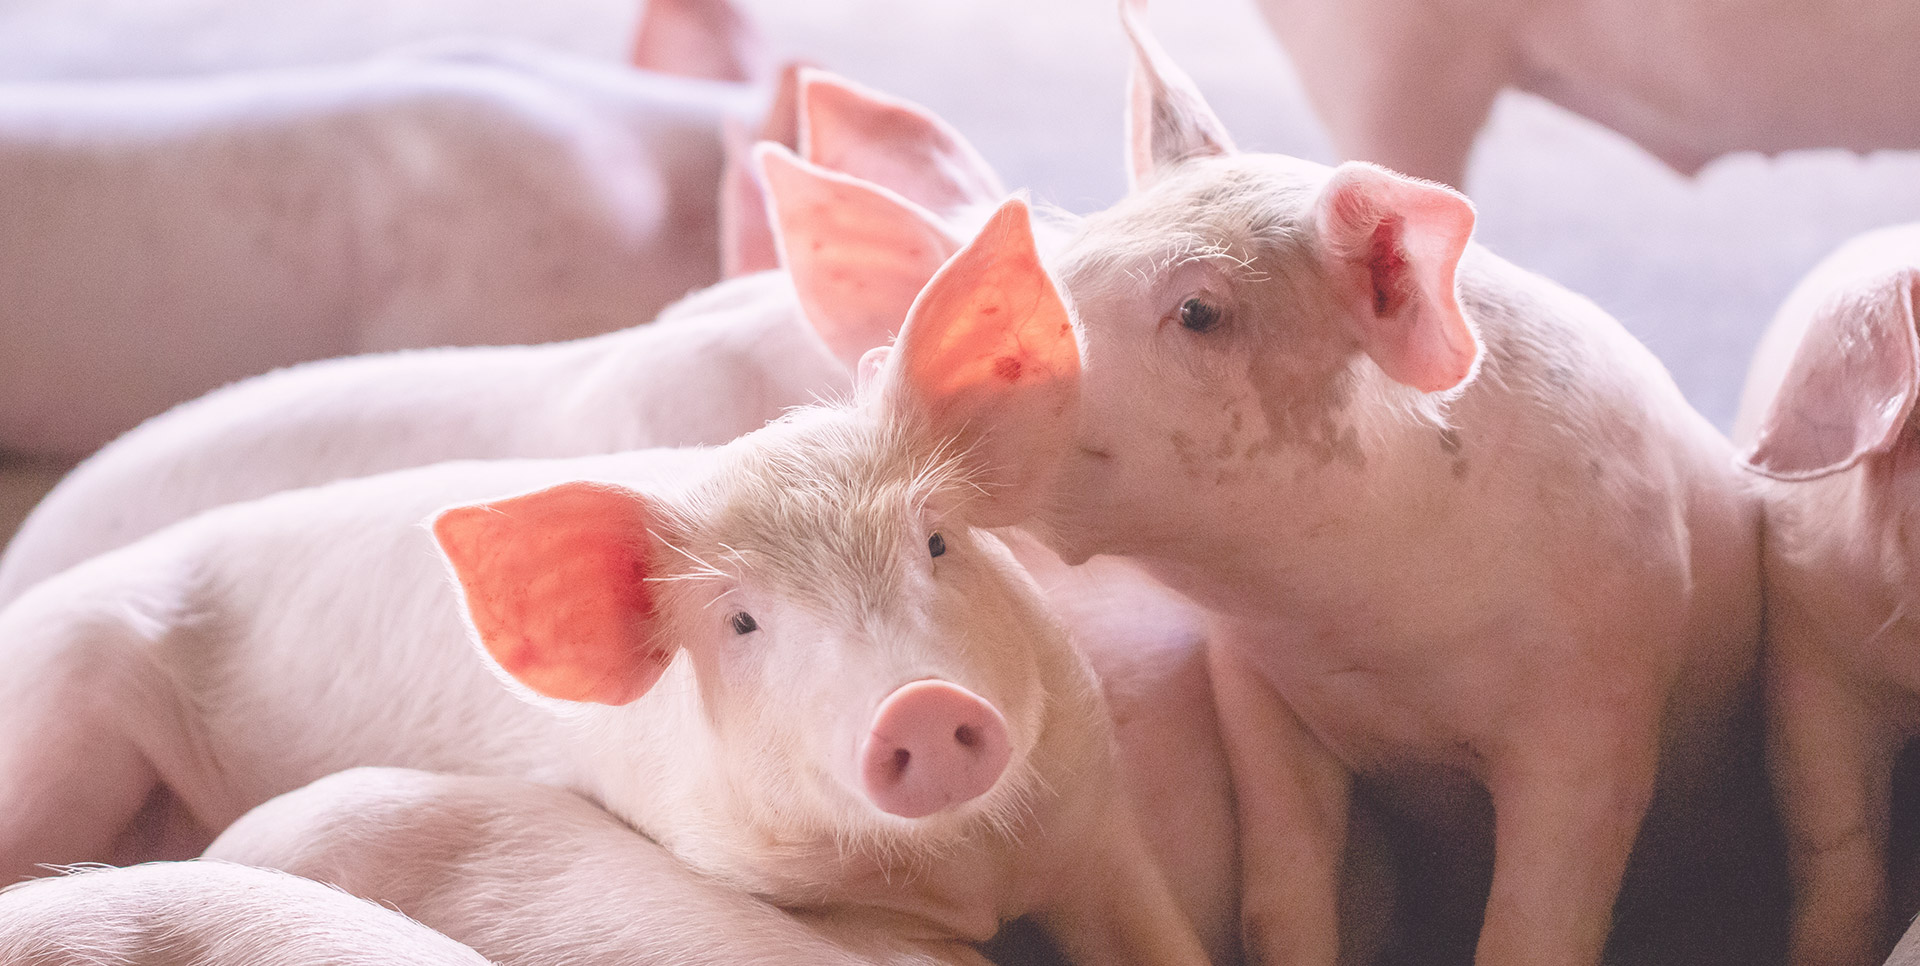 Le bien-être et la protection des porcs  Ministère de l'Agriculture et de  la Souveraineté alimentaire